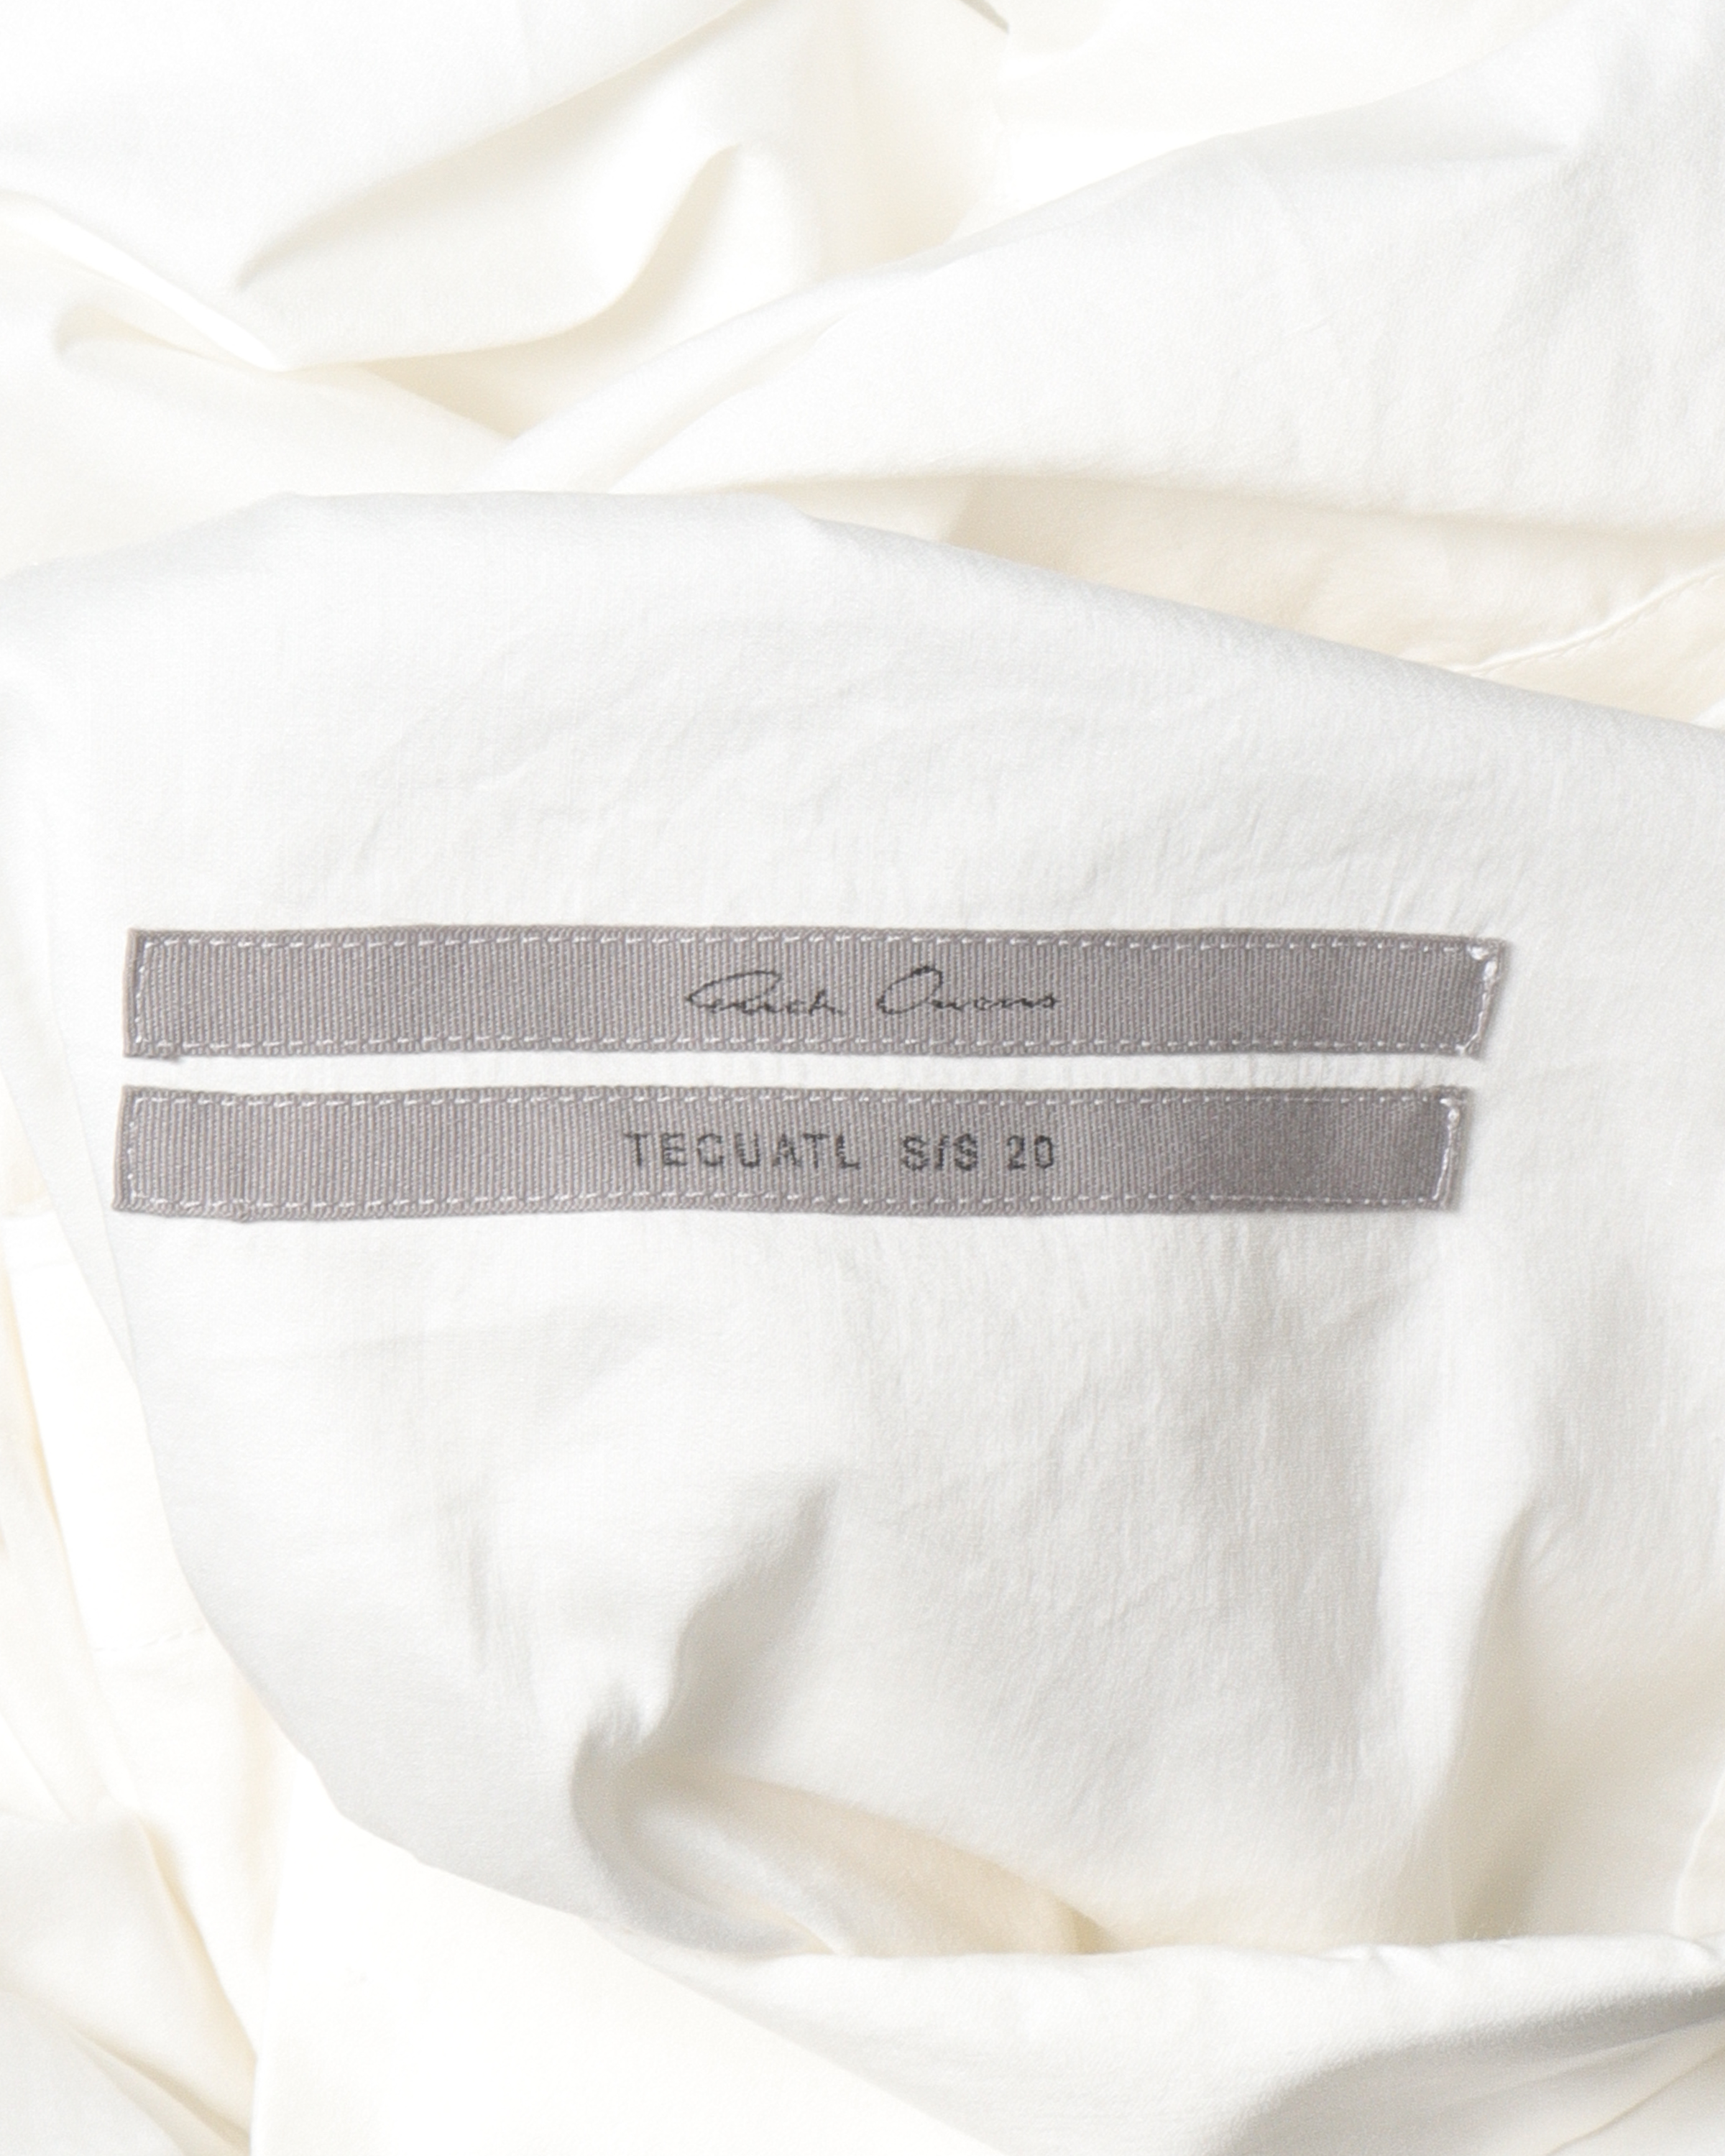 SS20 "TECUATL" Silk-Blend Button Shirt